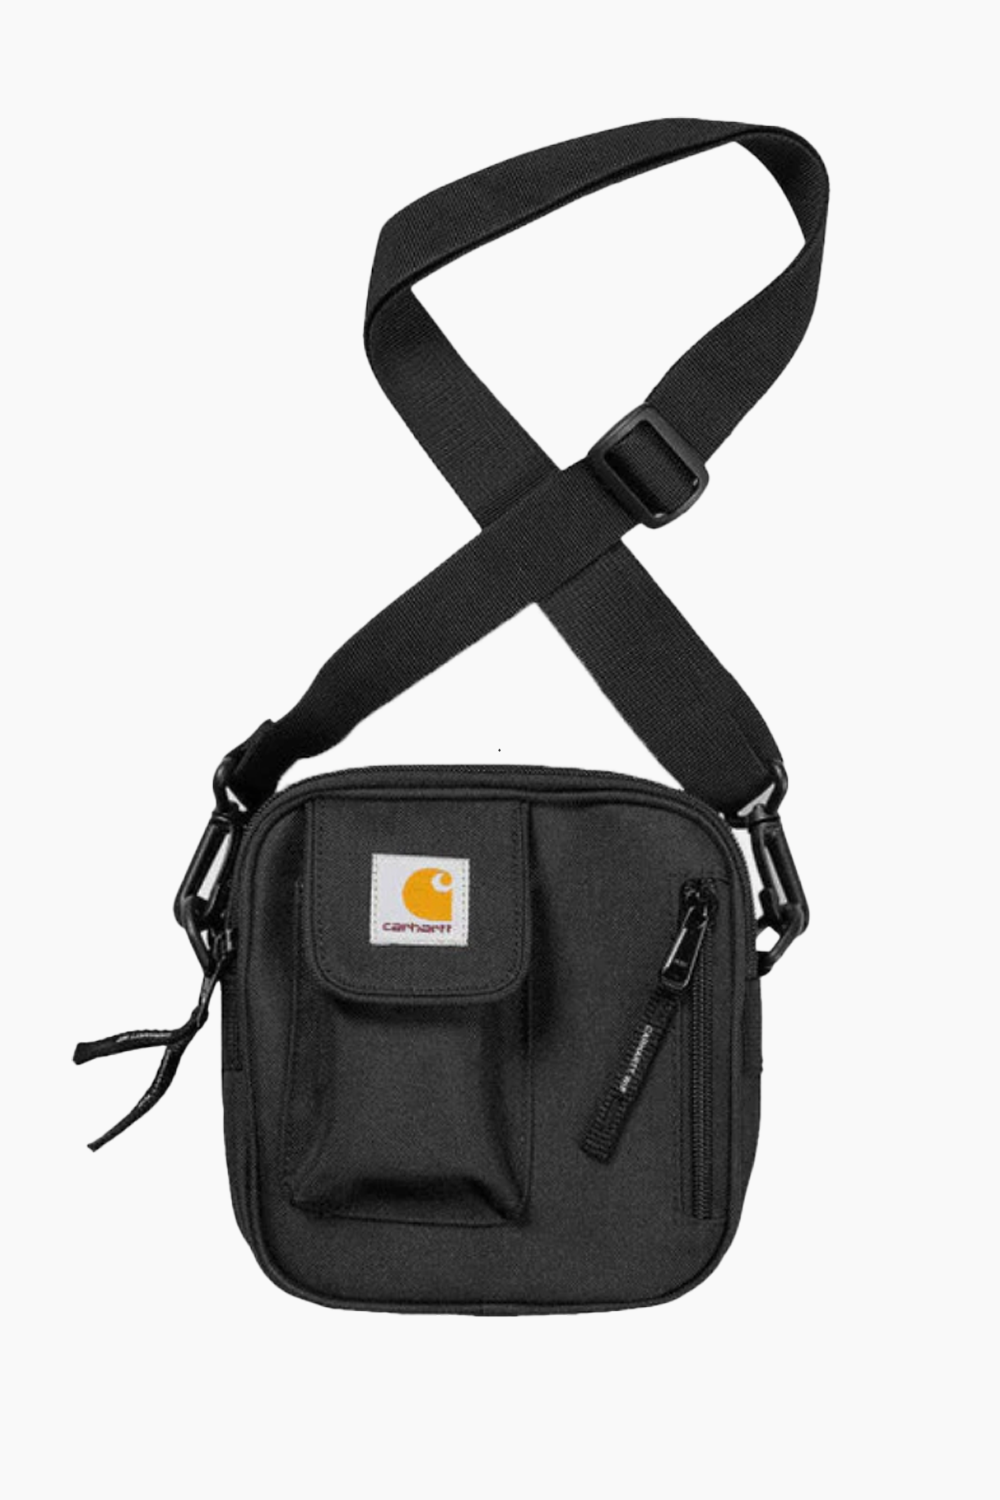 Essentials Bag, Small - Black - Carhartt - QNTS.dk